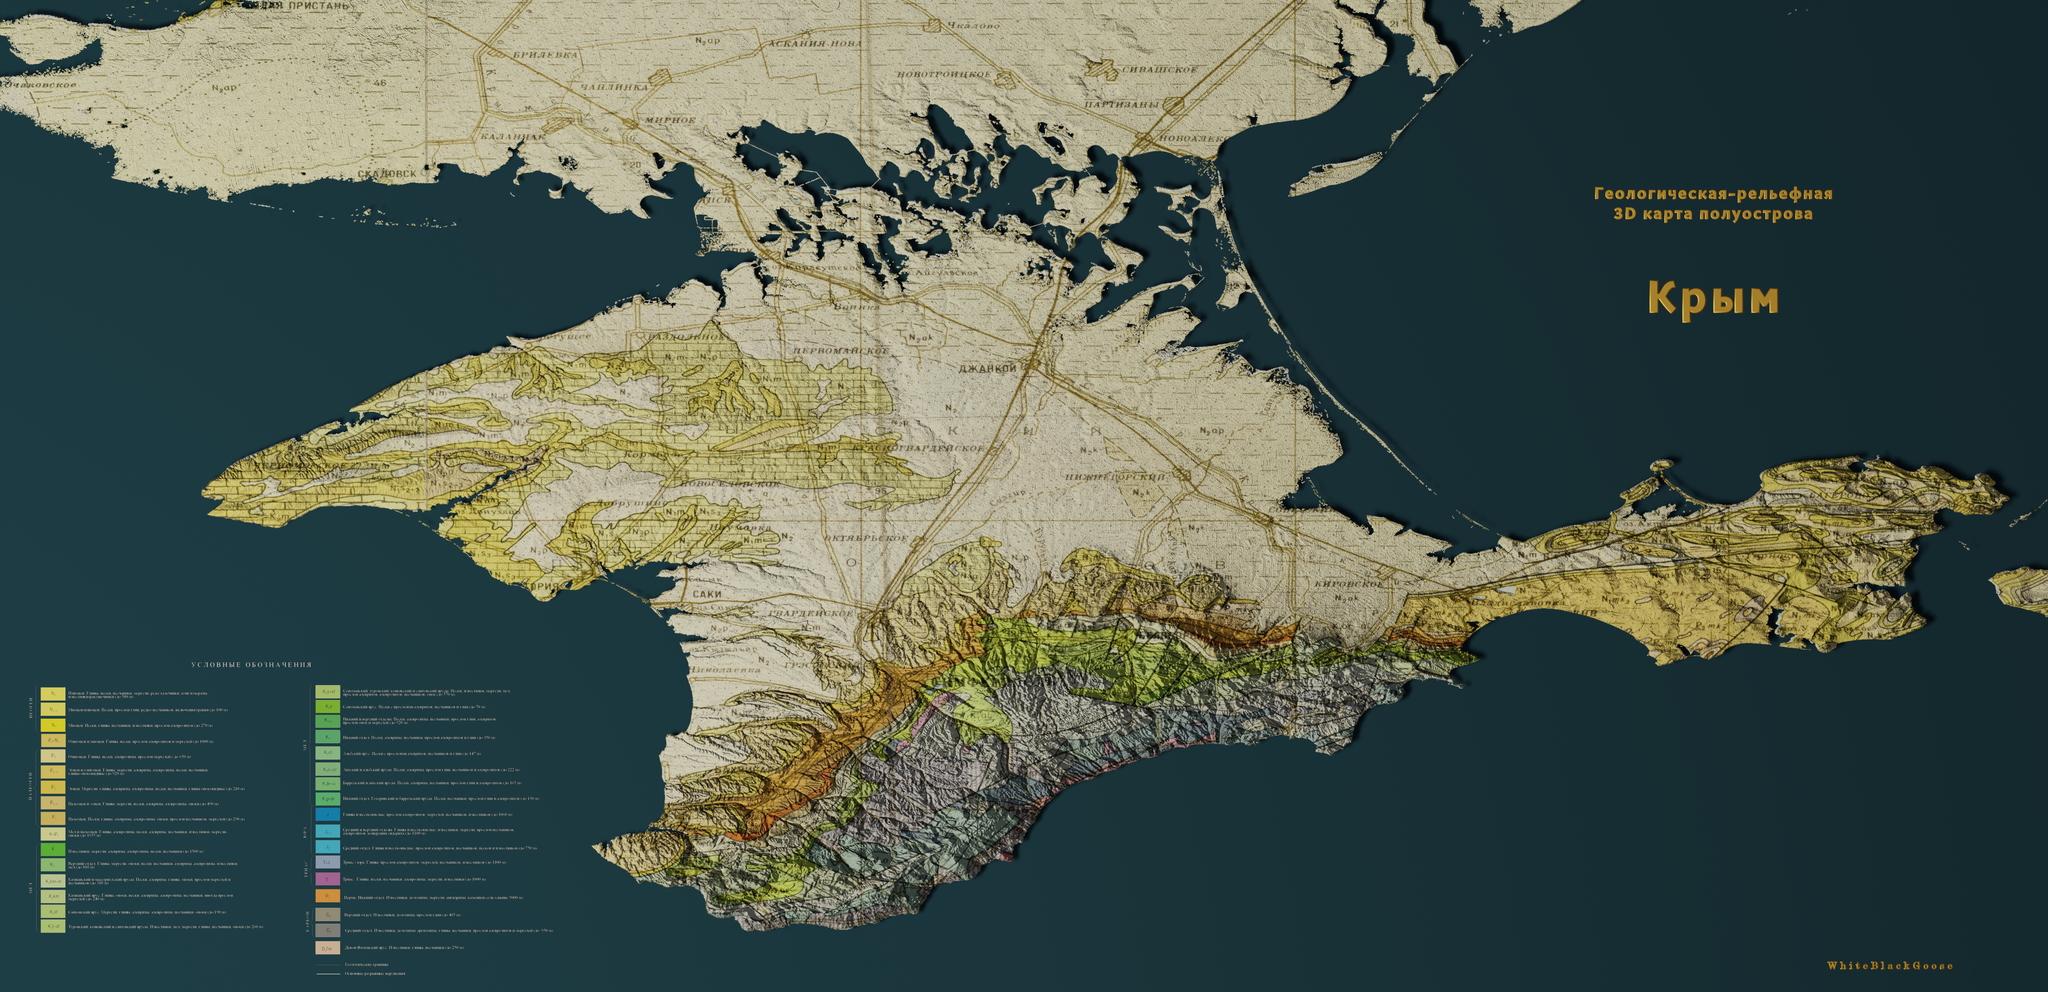 Геологическая-рельефная карта Крыма [9600x4650]